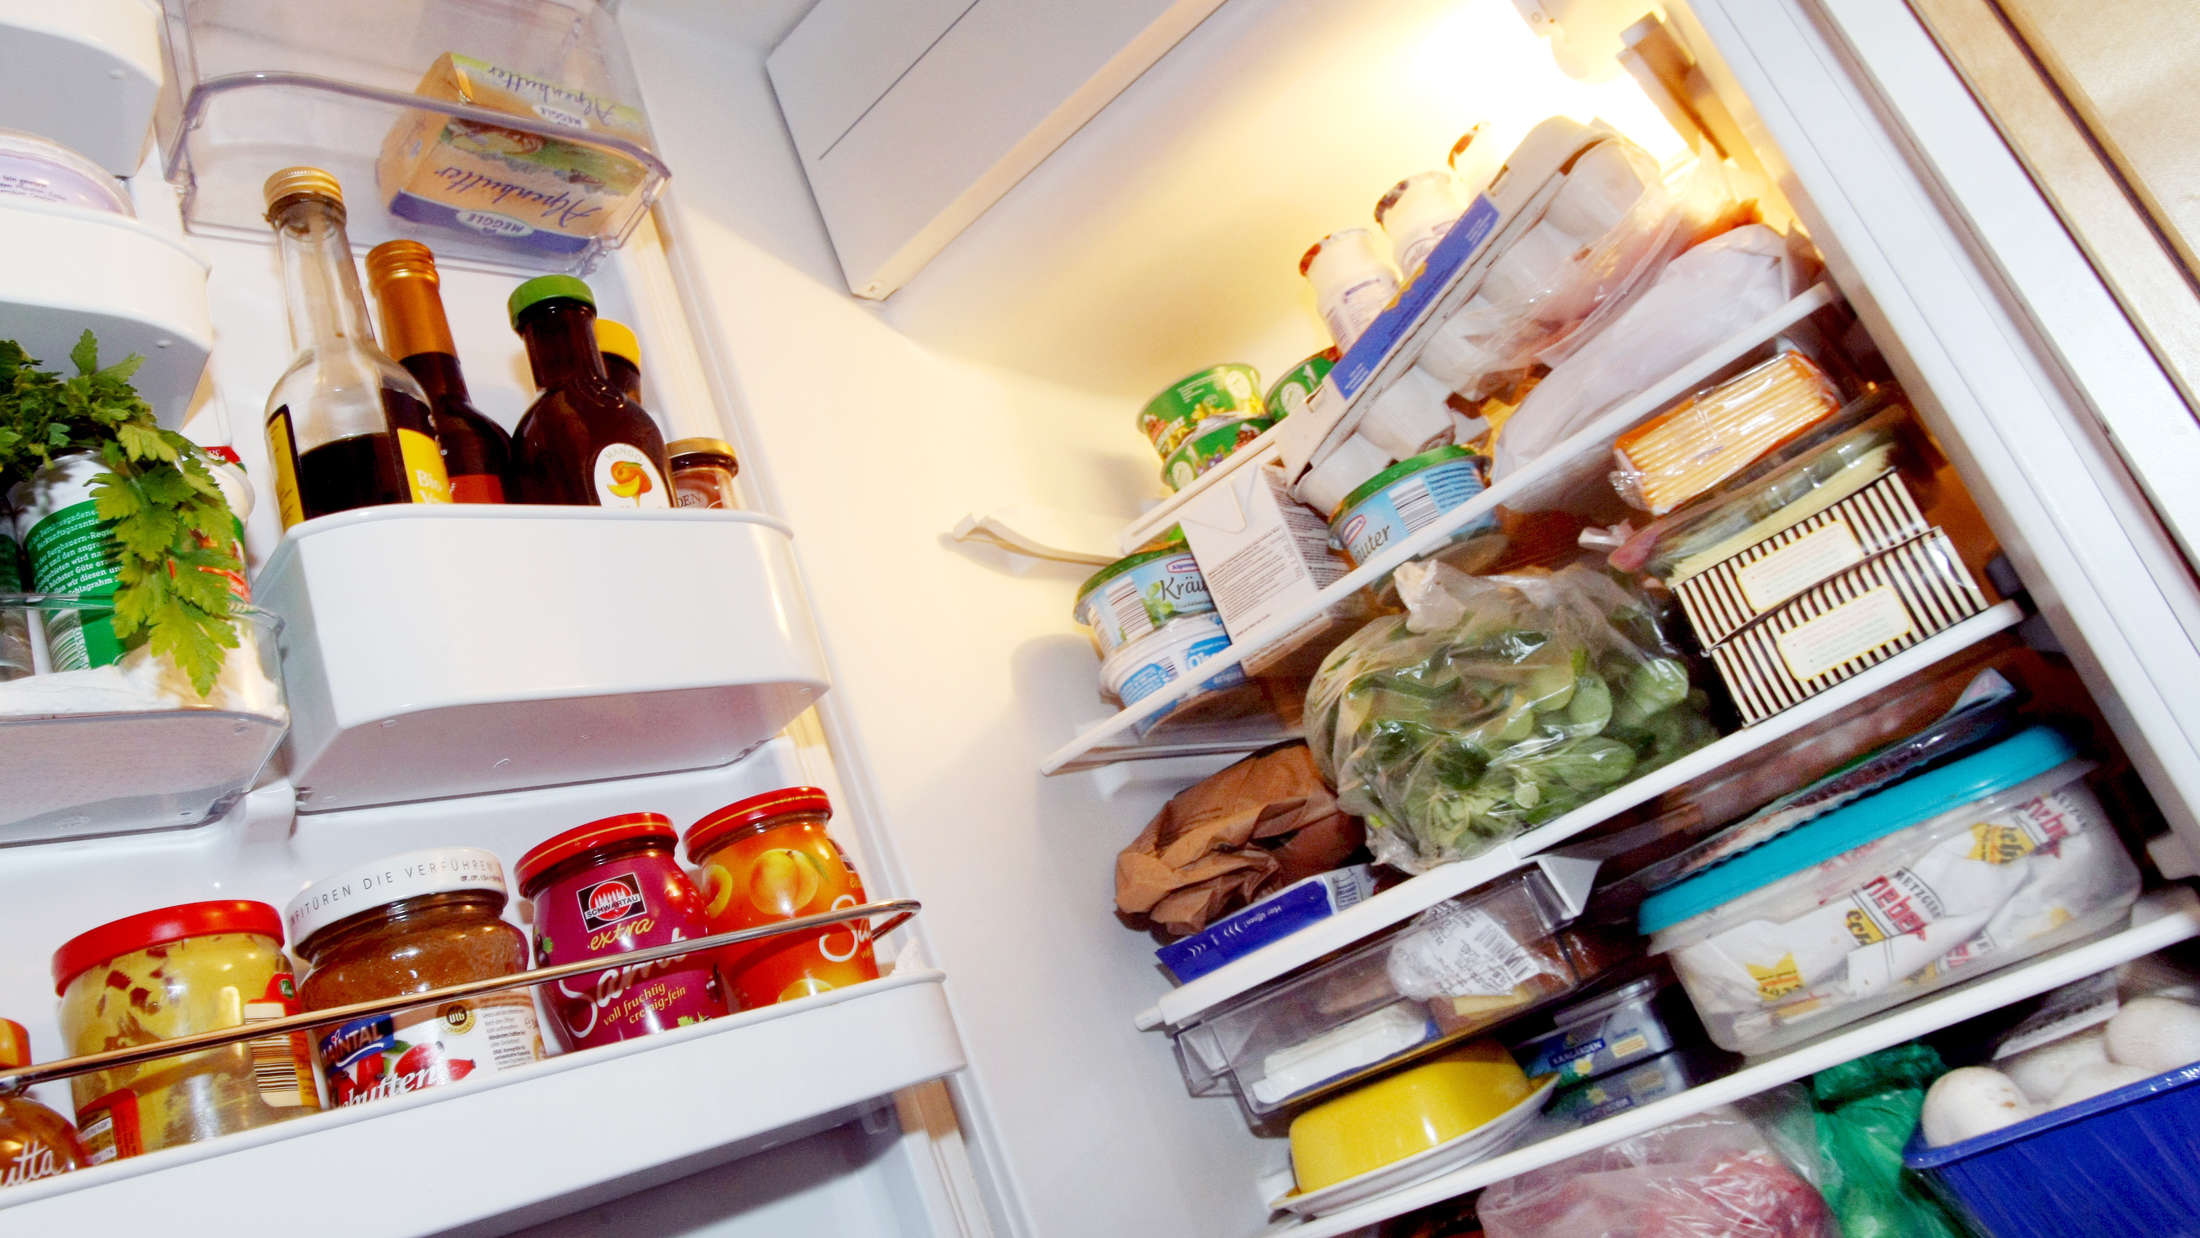 Можно ли хранить в холодильнике анализ мочи. Холодильник фото. Фрукты в холодильнике. Фото холодильника с продуктами. Мед в холодильнике.